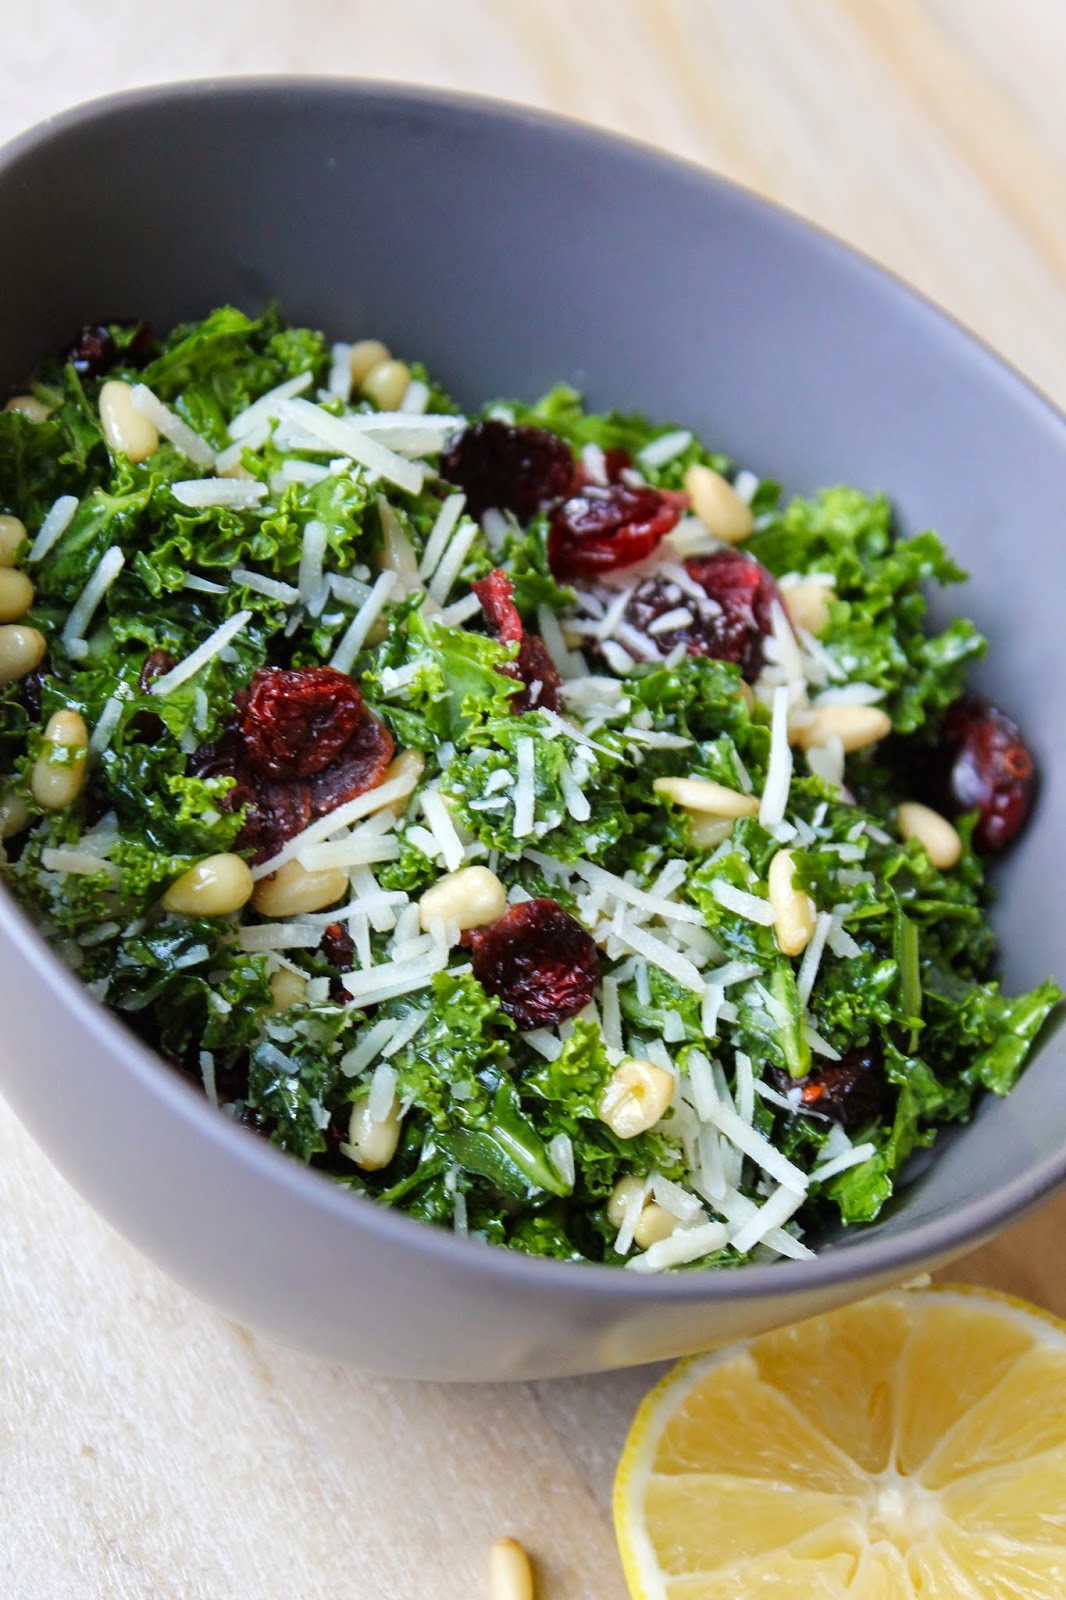 DancesintheKitchen: Cranberry Lemon Kale Salad with Parmesan and Pine Nuts